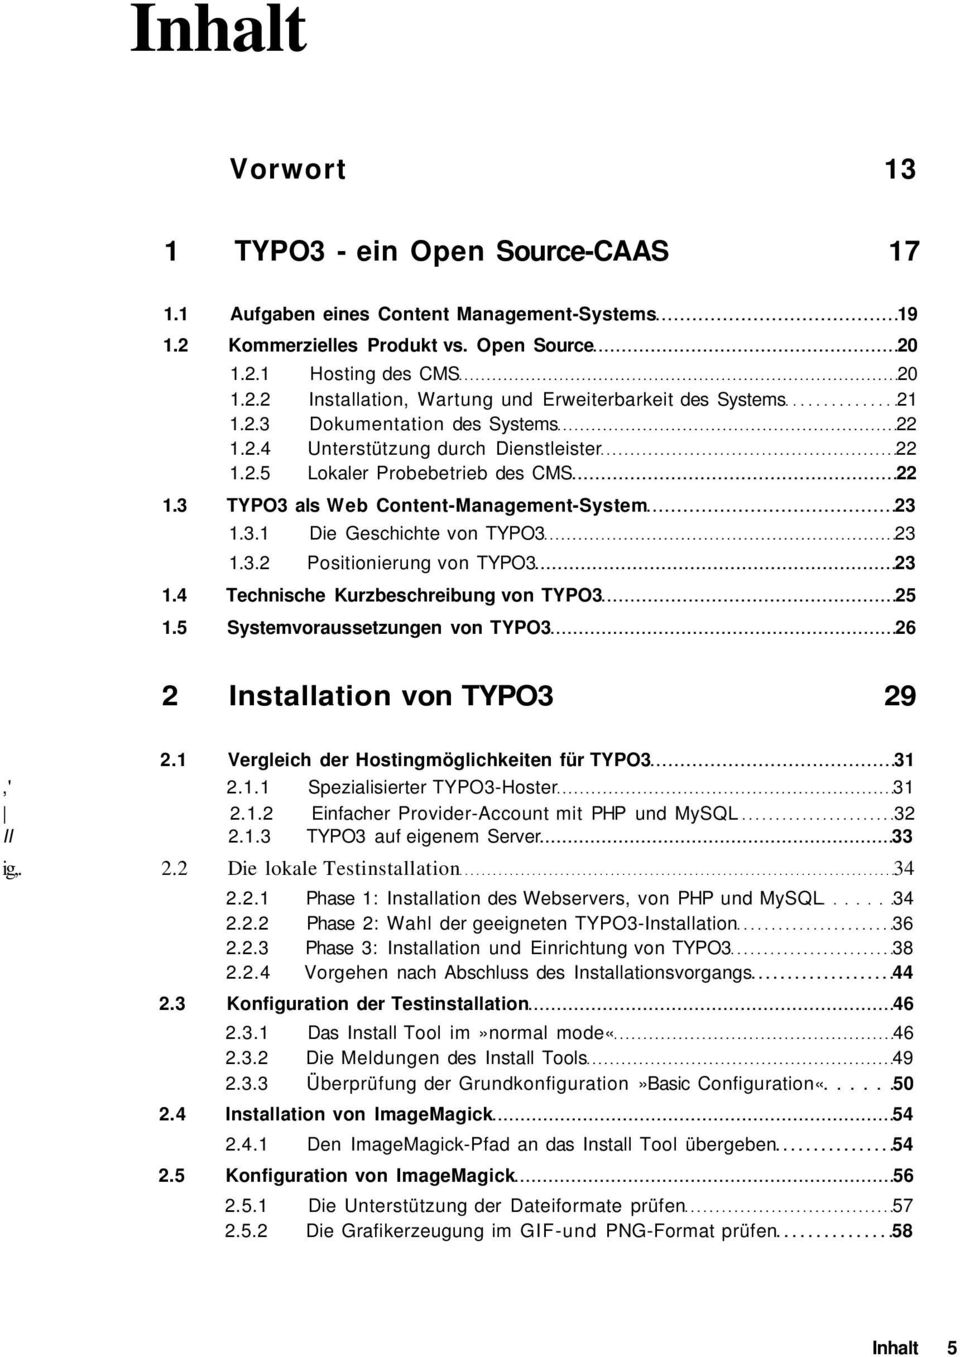 4 Technische Kurzbeschreibung von TYPO3 25 1.5 Systemvoraussetzungen von TYPO3 26 2 Installation von TYPO3 29 2.1 Vergleich der Hostingmöglichkeiten für TYPO3 31,' 2.1.1 Spezialisierter TYPO3-Hoster 31 2.